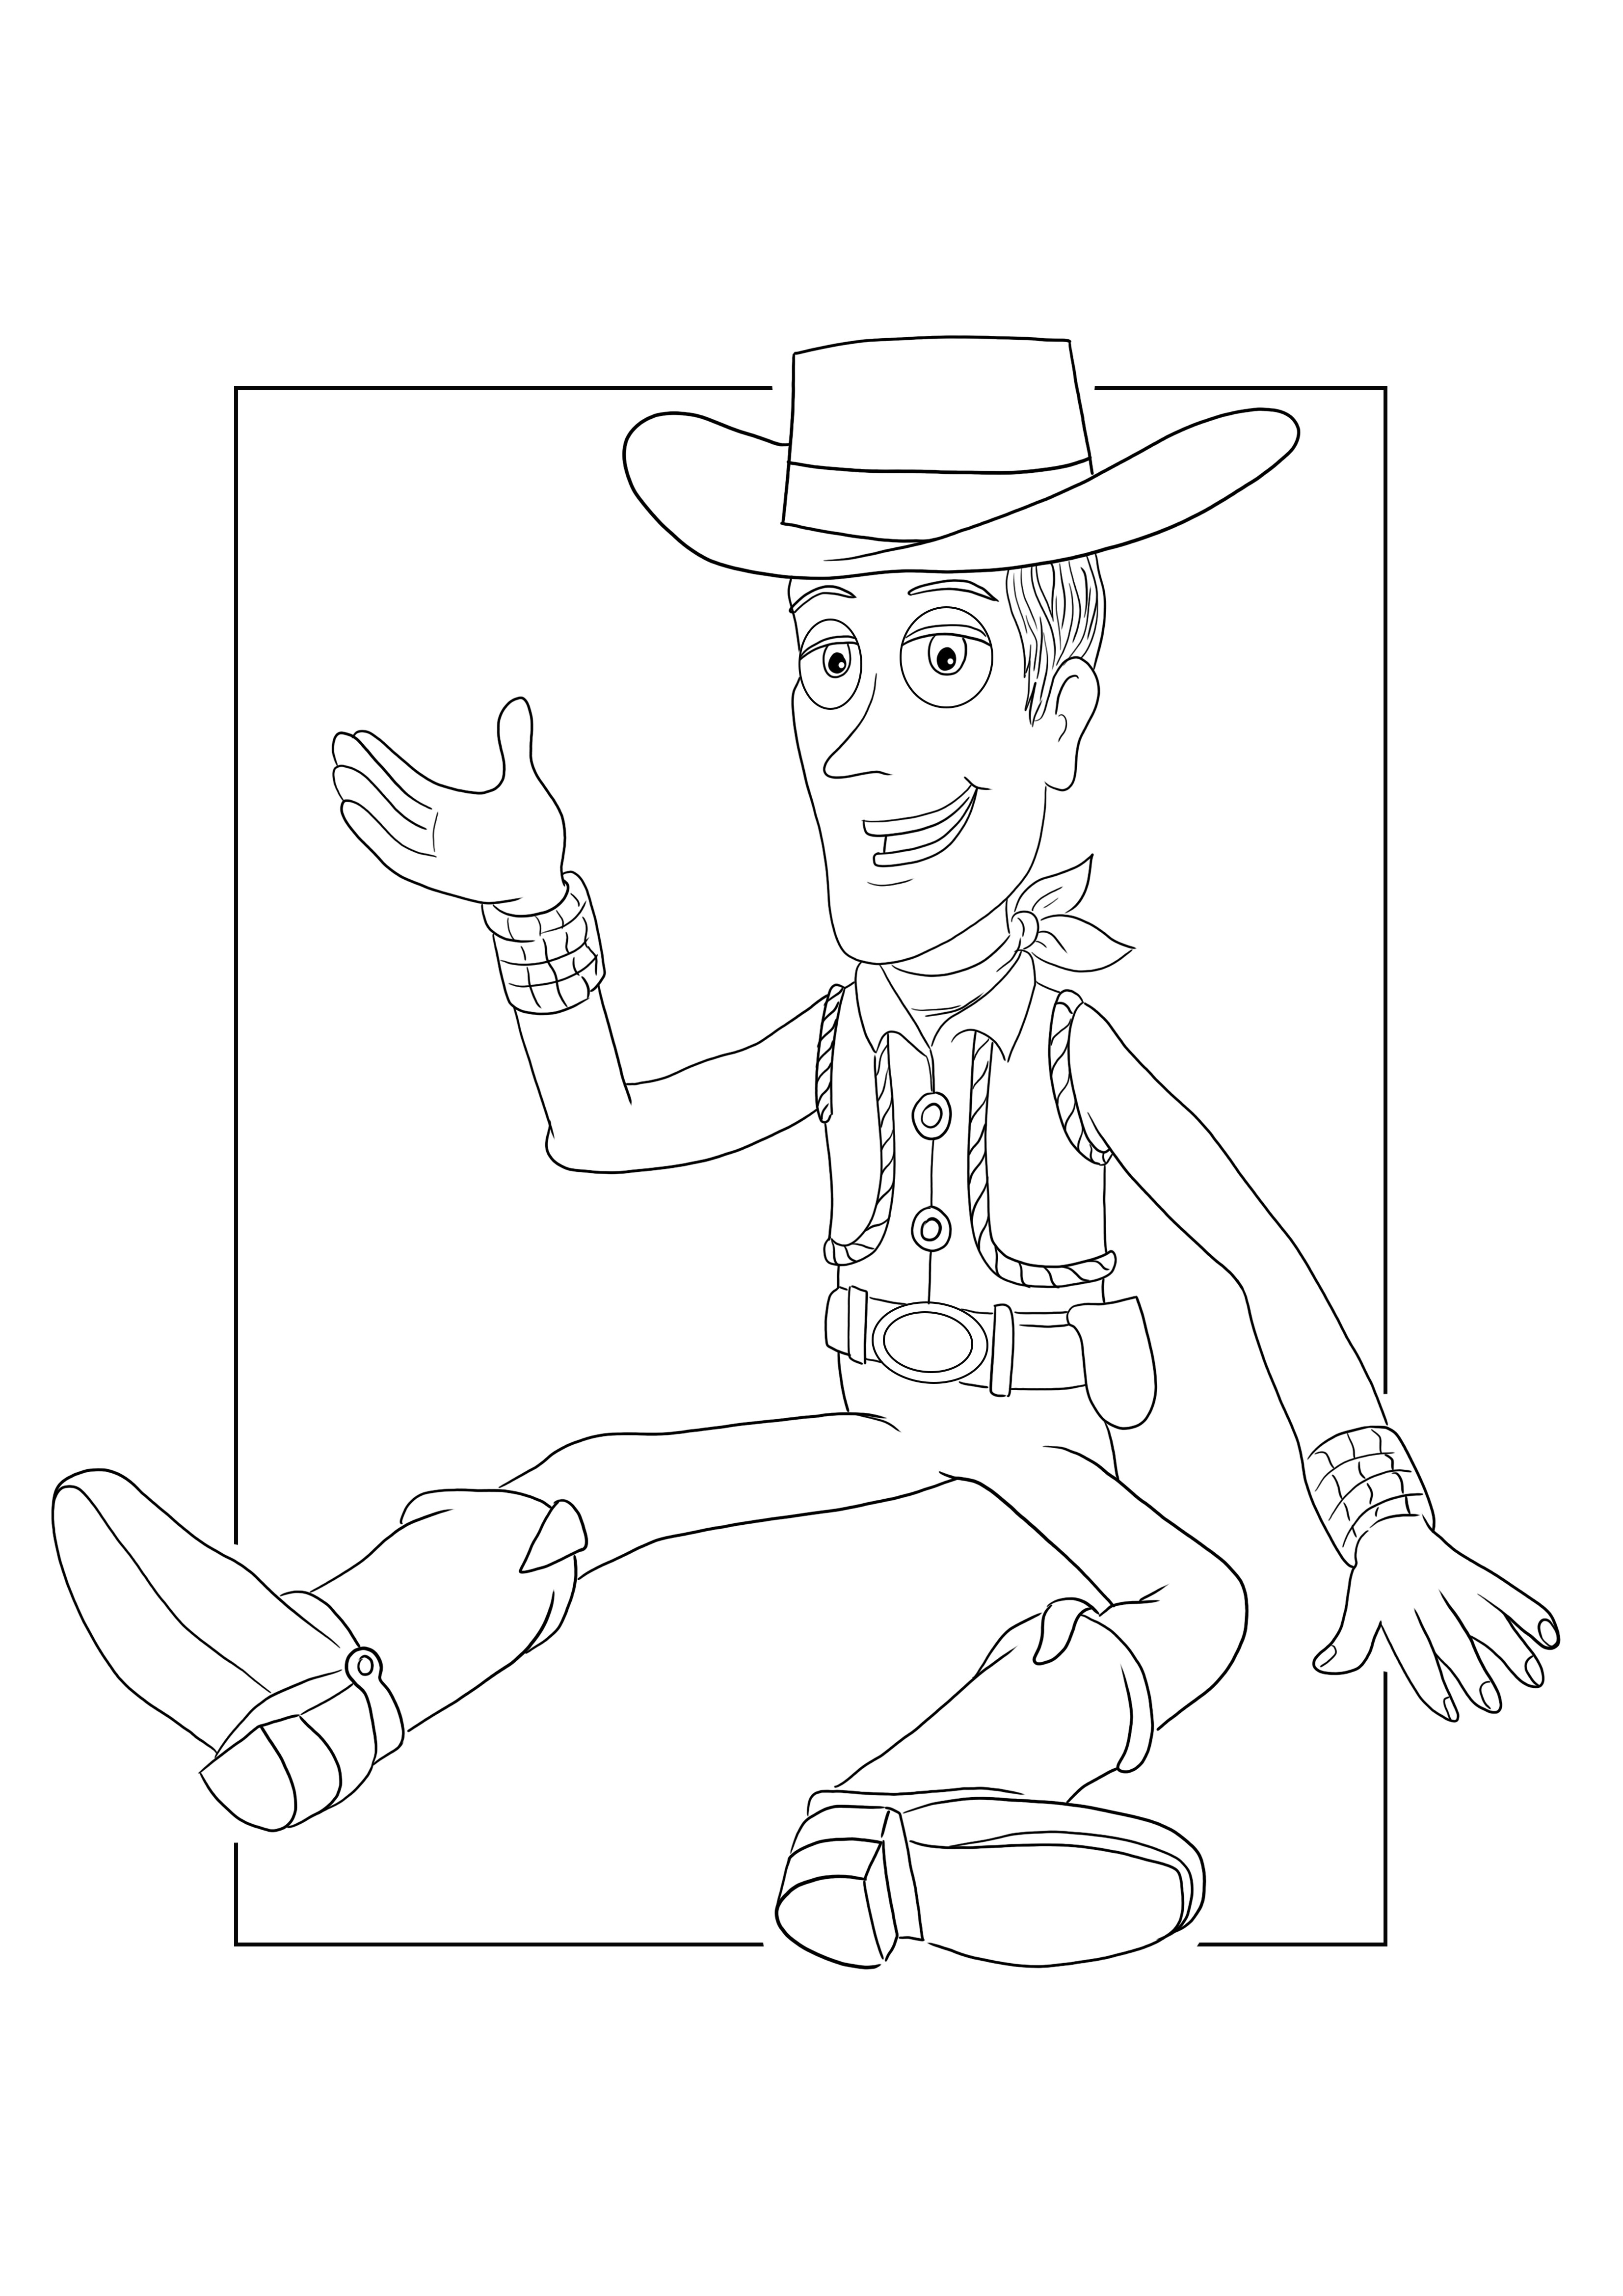 Sheriff Woody zum Ausmalen und Drucken für ein kostenloses Blatt für Kinder